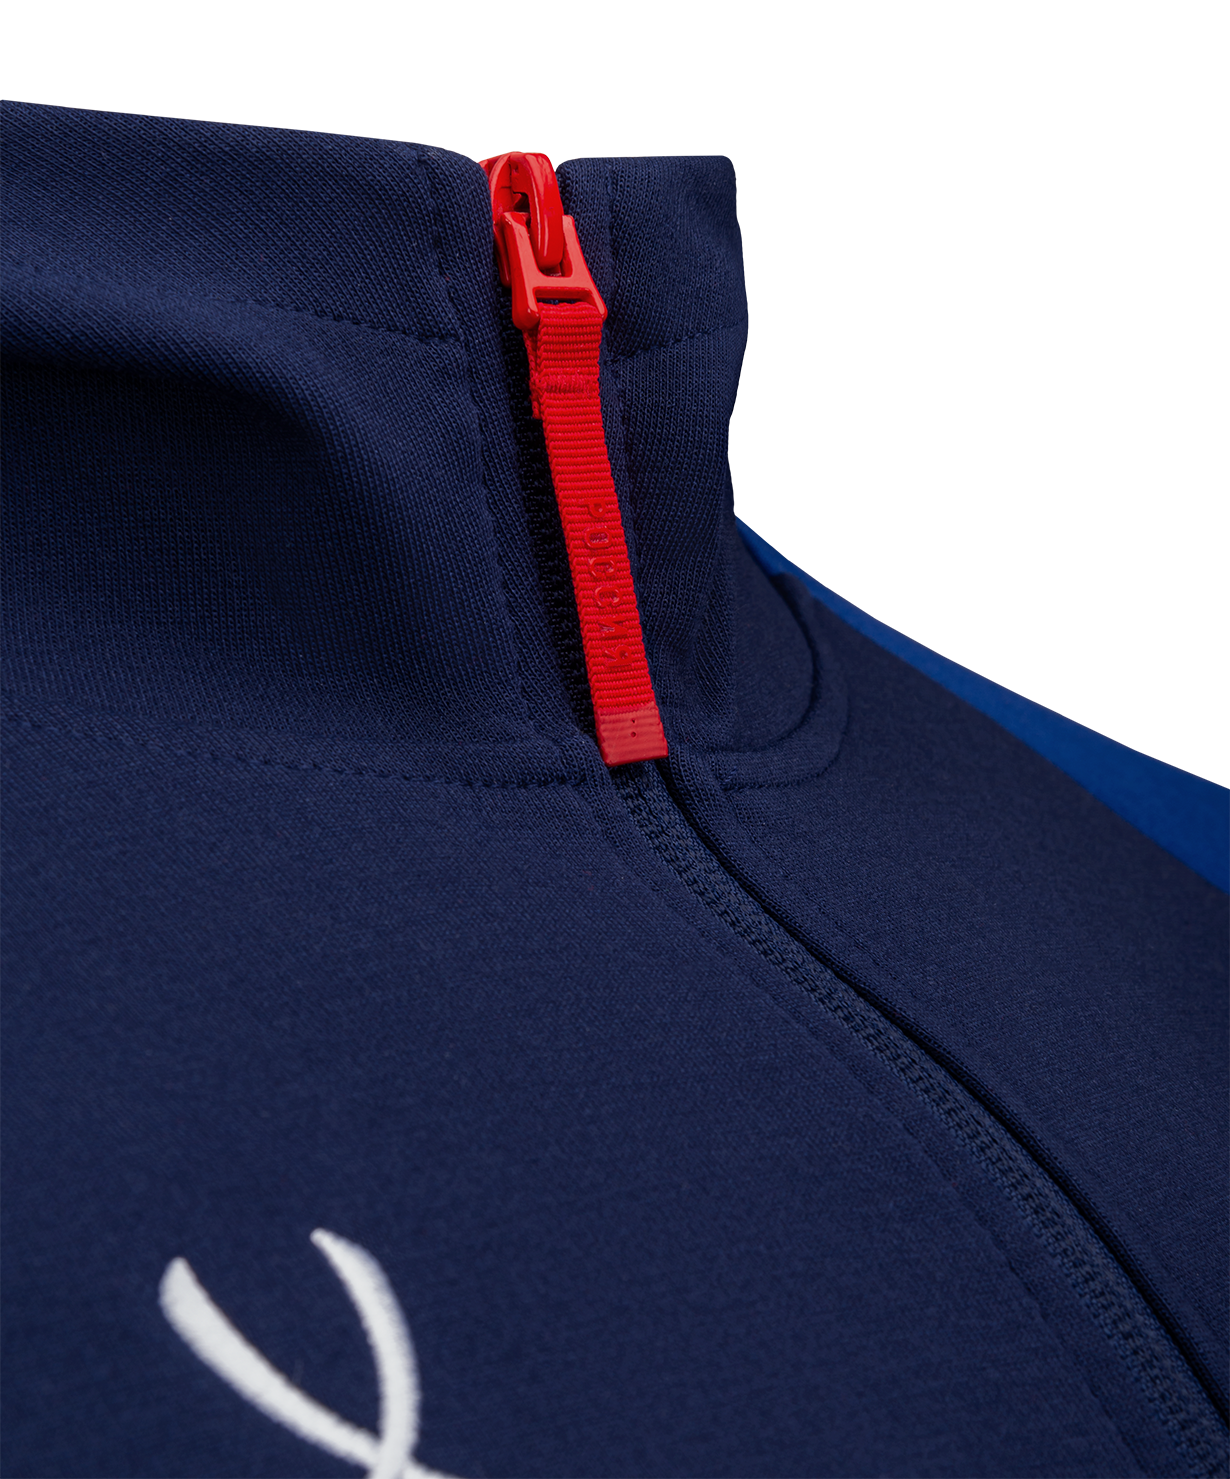 Фото Худи на молнии NATIONAL Essential Hooded FZ Jacket, синий/темно-синий со склада магазина СпортСЕ